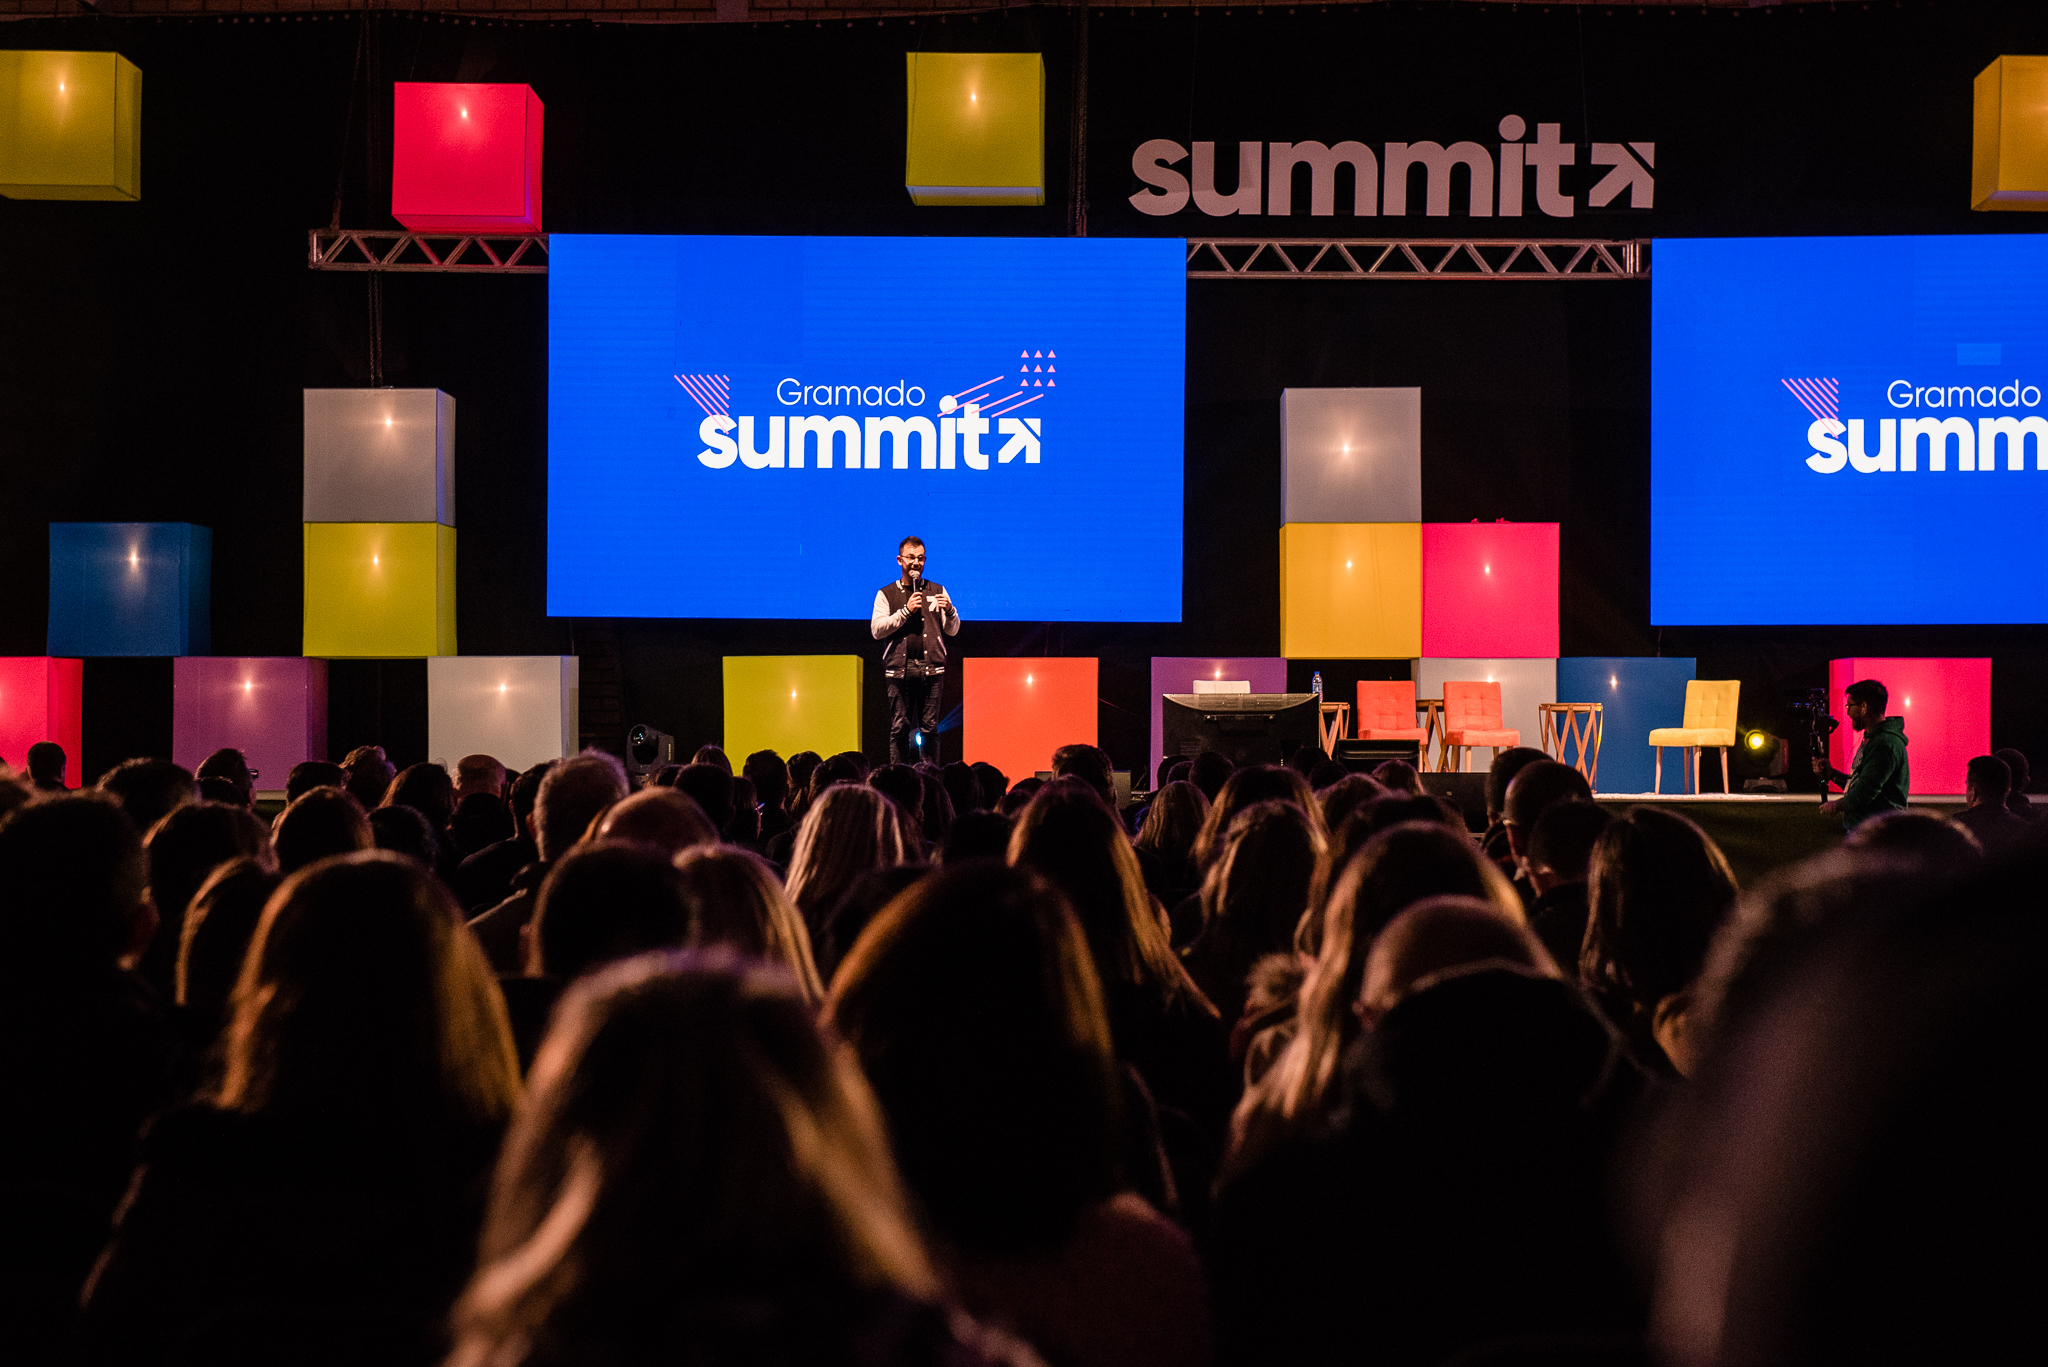 O Gramado Summit é um dos principais eventos de tecnologia do País